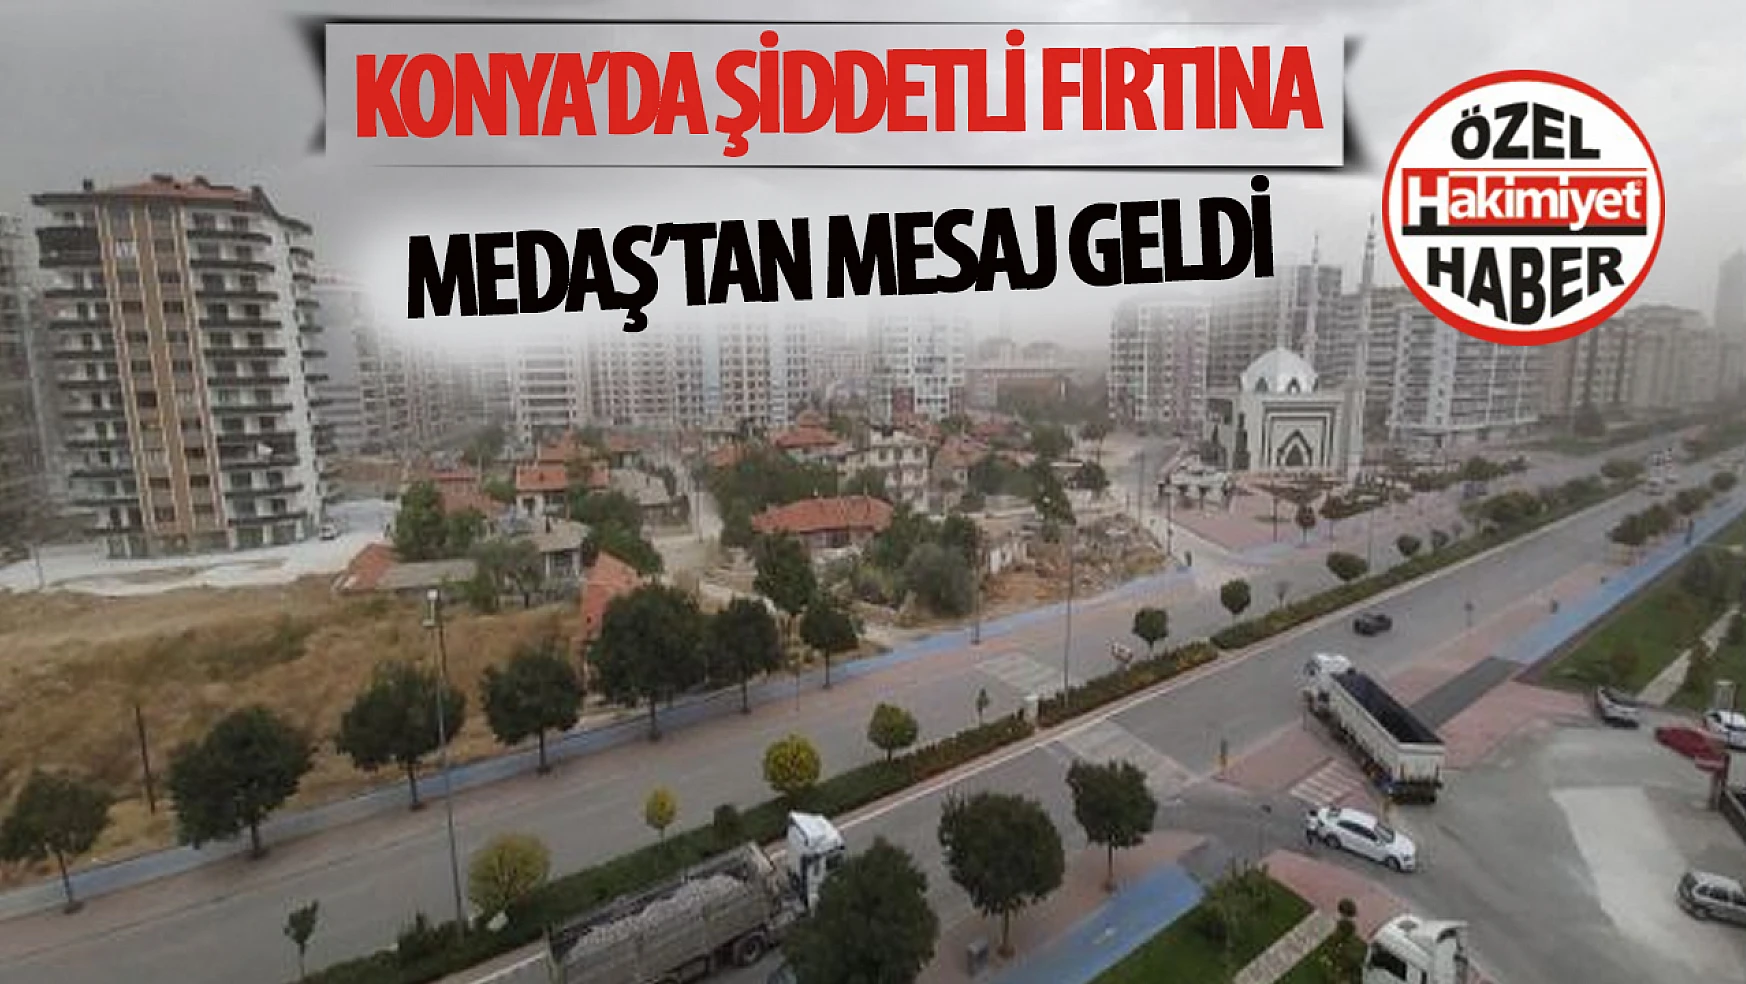 Konya'da Şiddetli Fırtına Maddi Hasarlara Yol Açtı: MEDAŞ'tan Elektrik Kullanıcılarına Mesaj